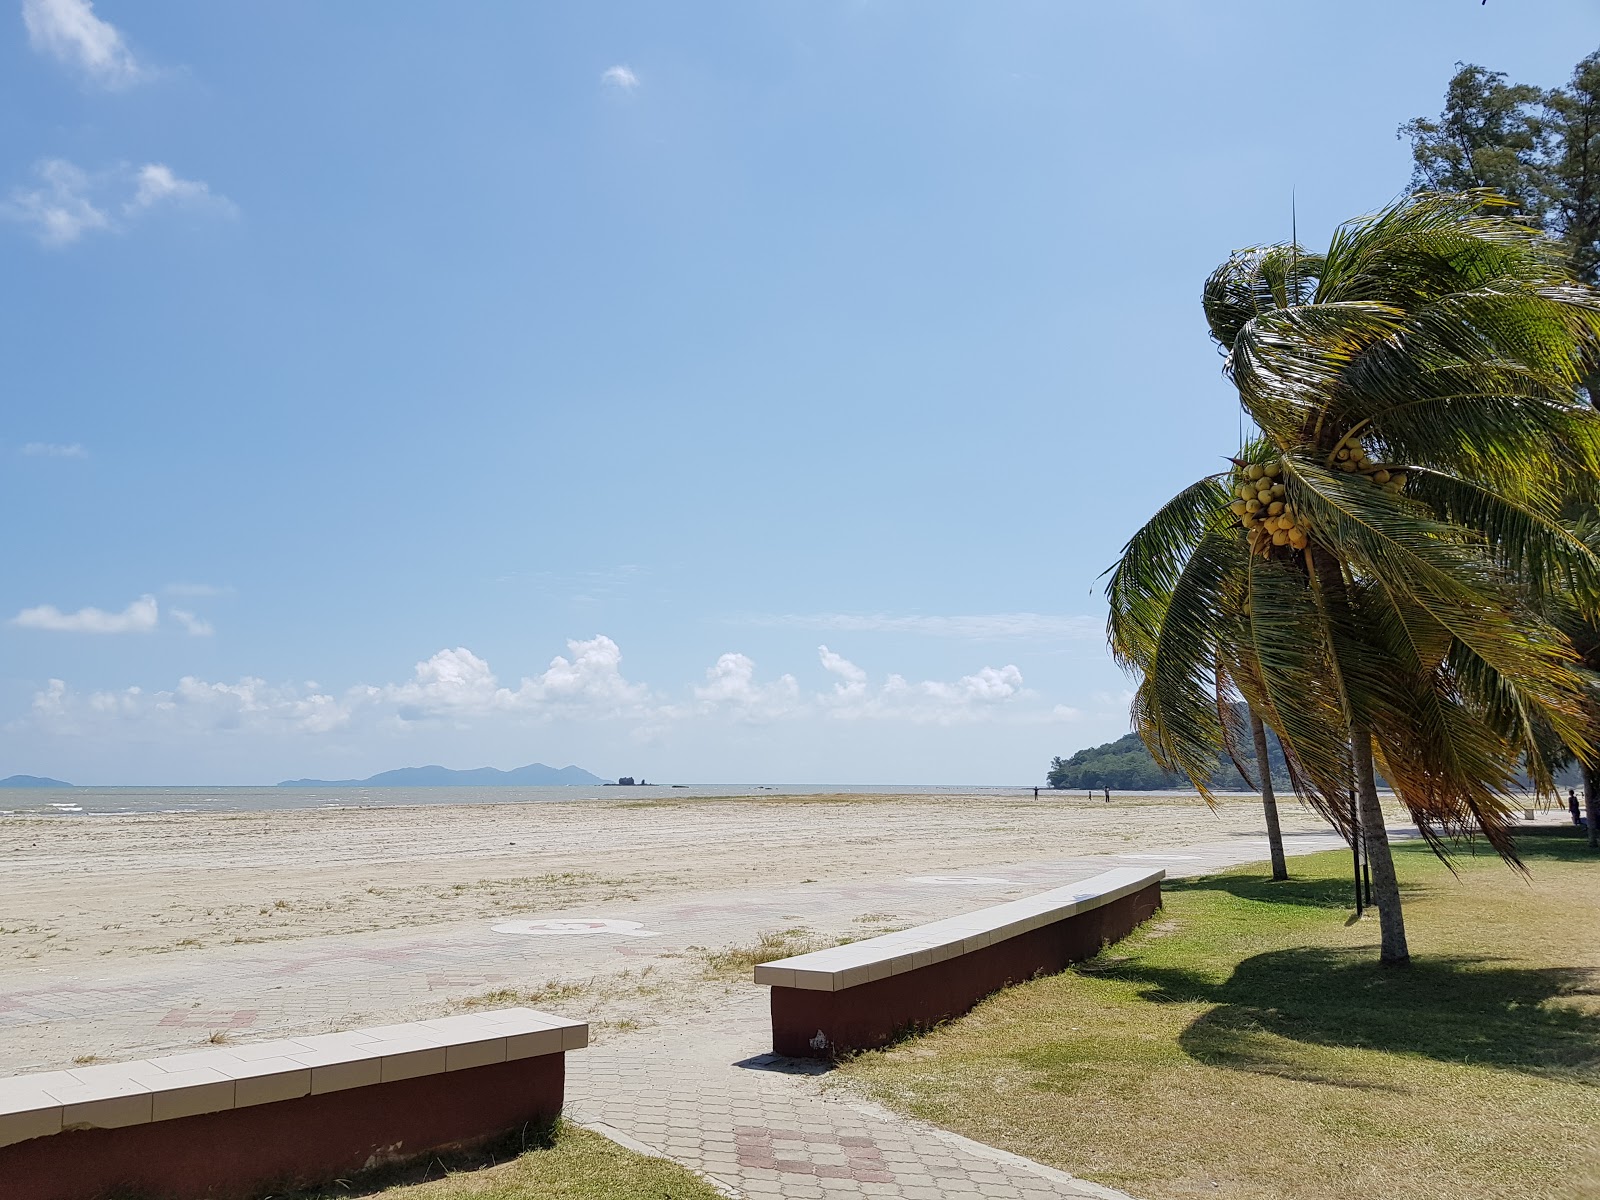 Zdjęcie Bandar Mersing Beach z powierzchnią szary piasek